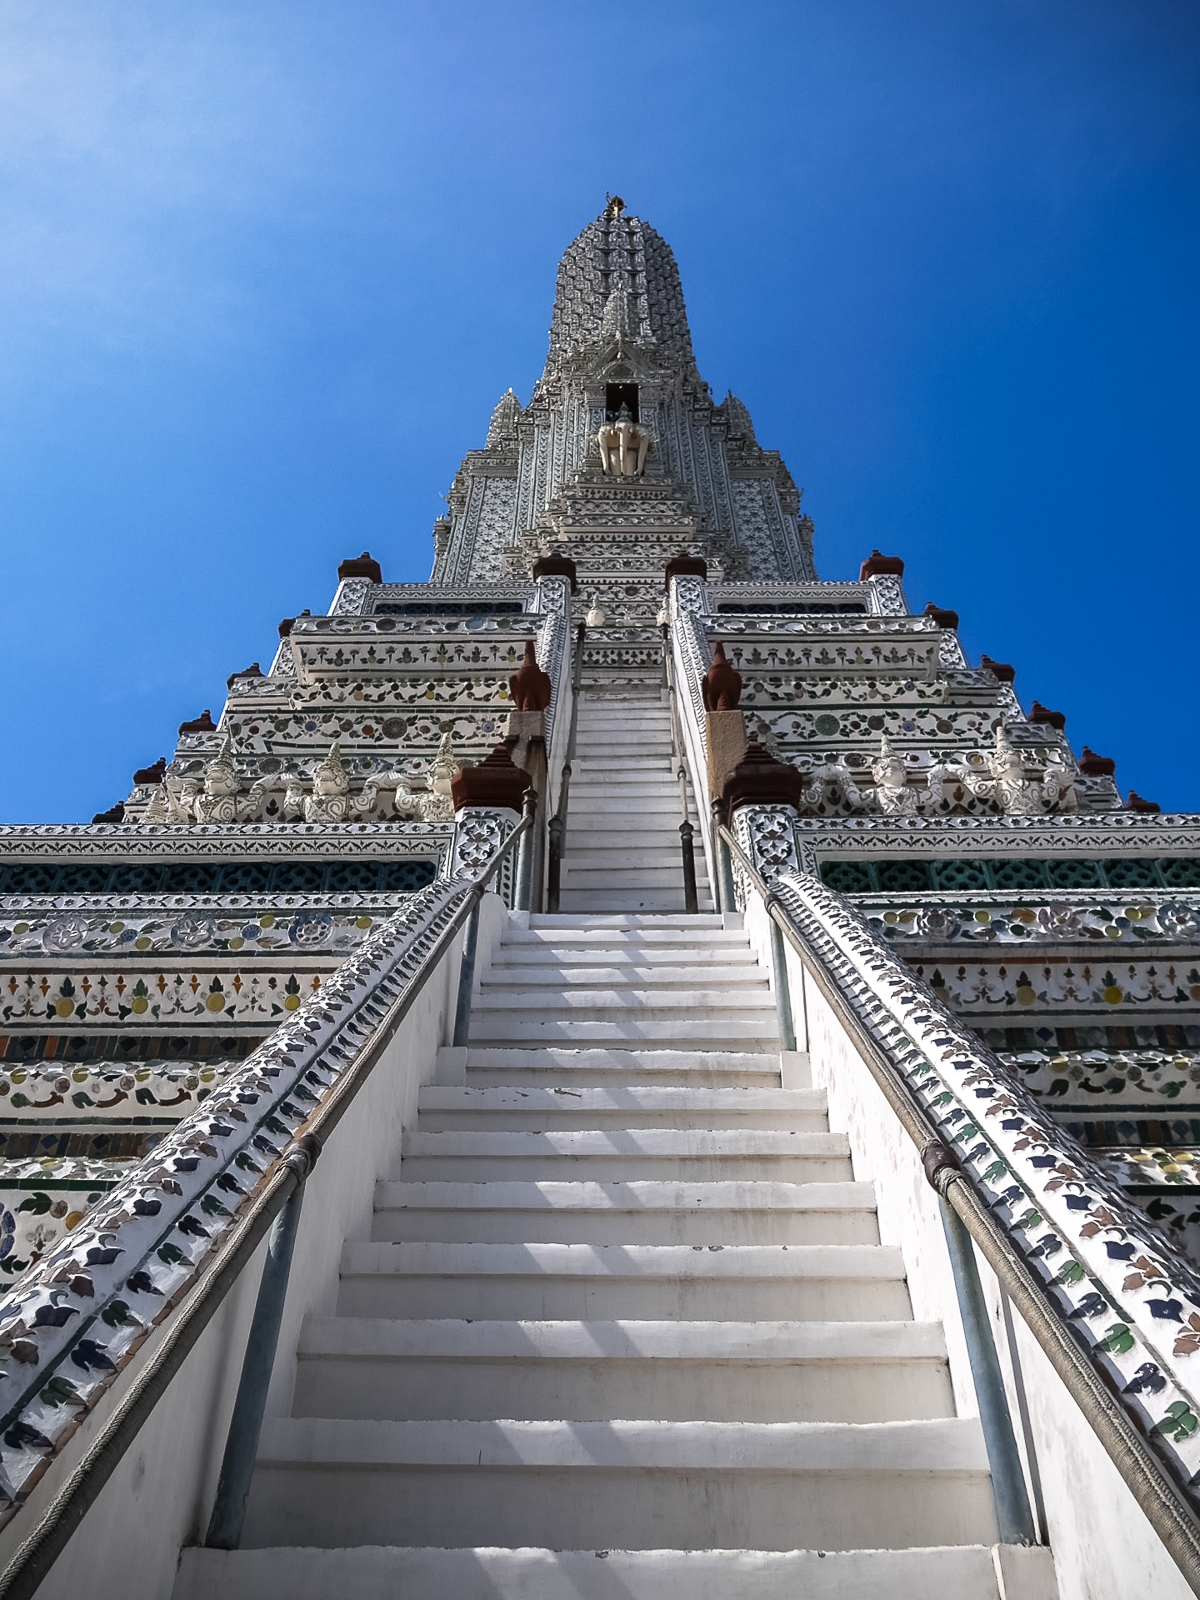 Wat Arun Temple of Dawn